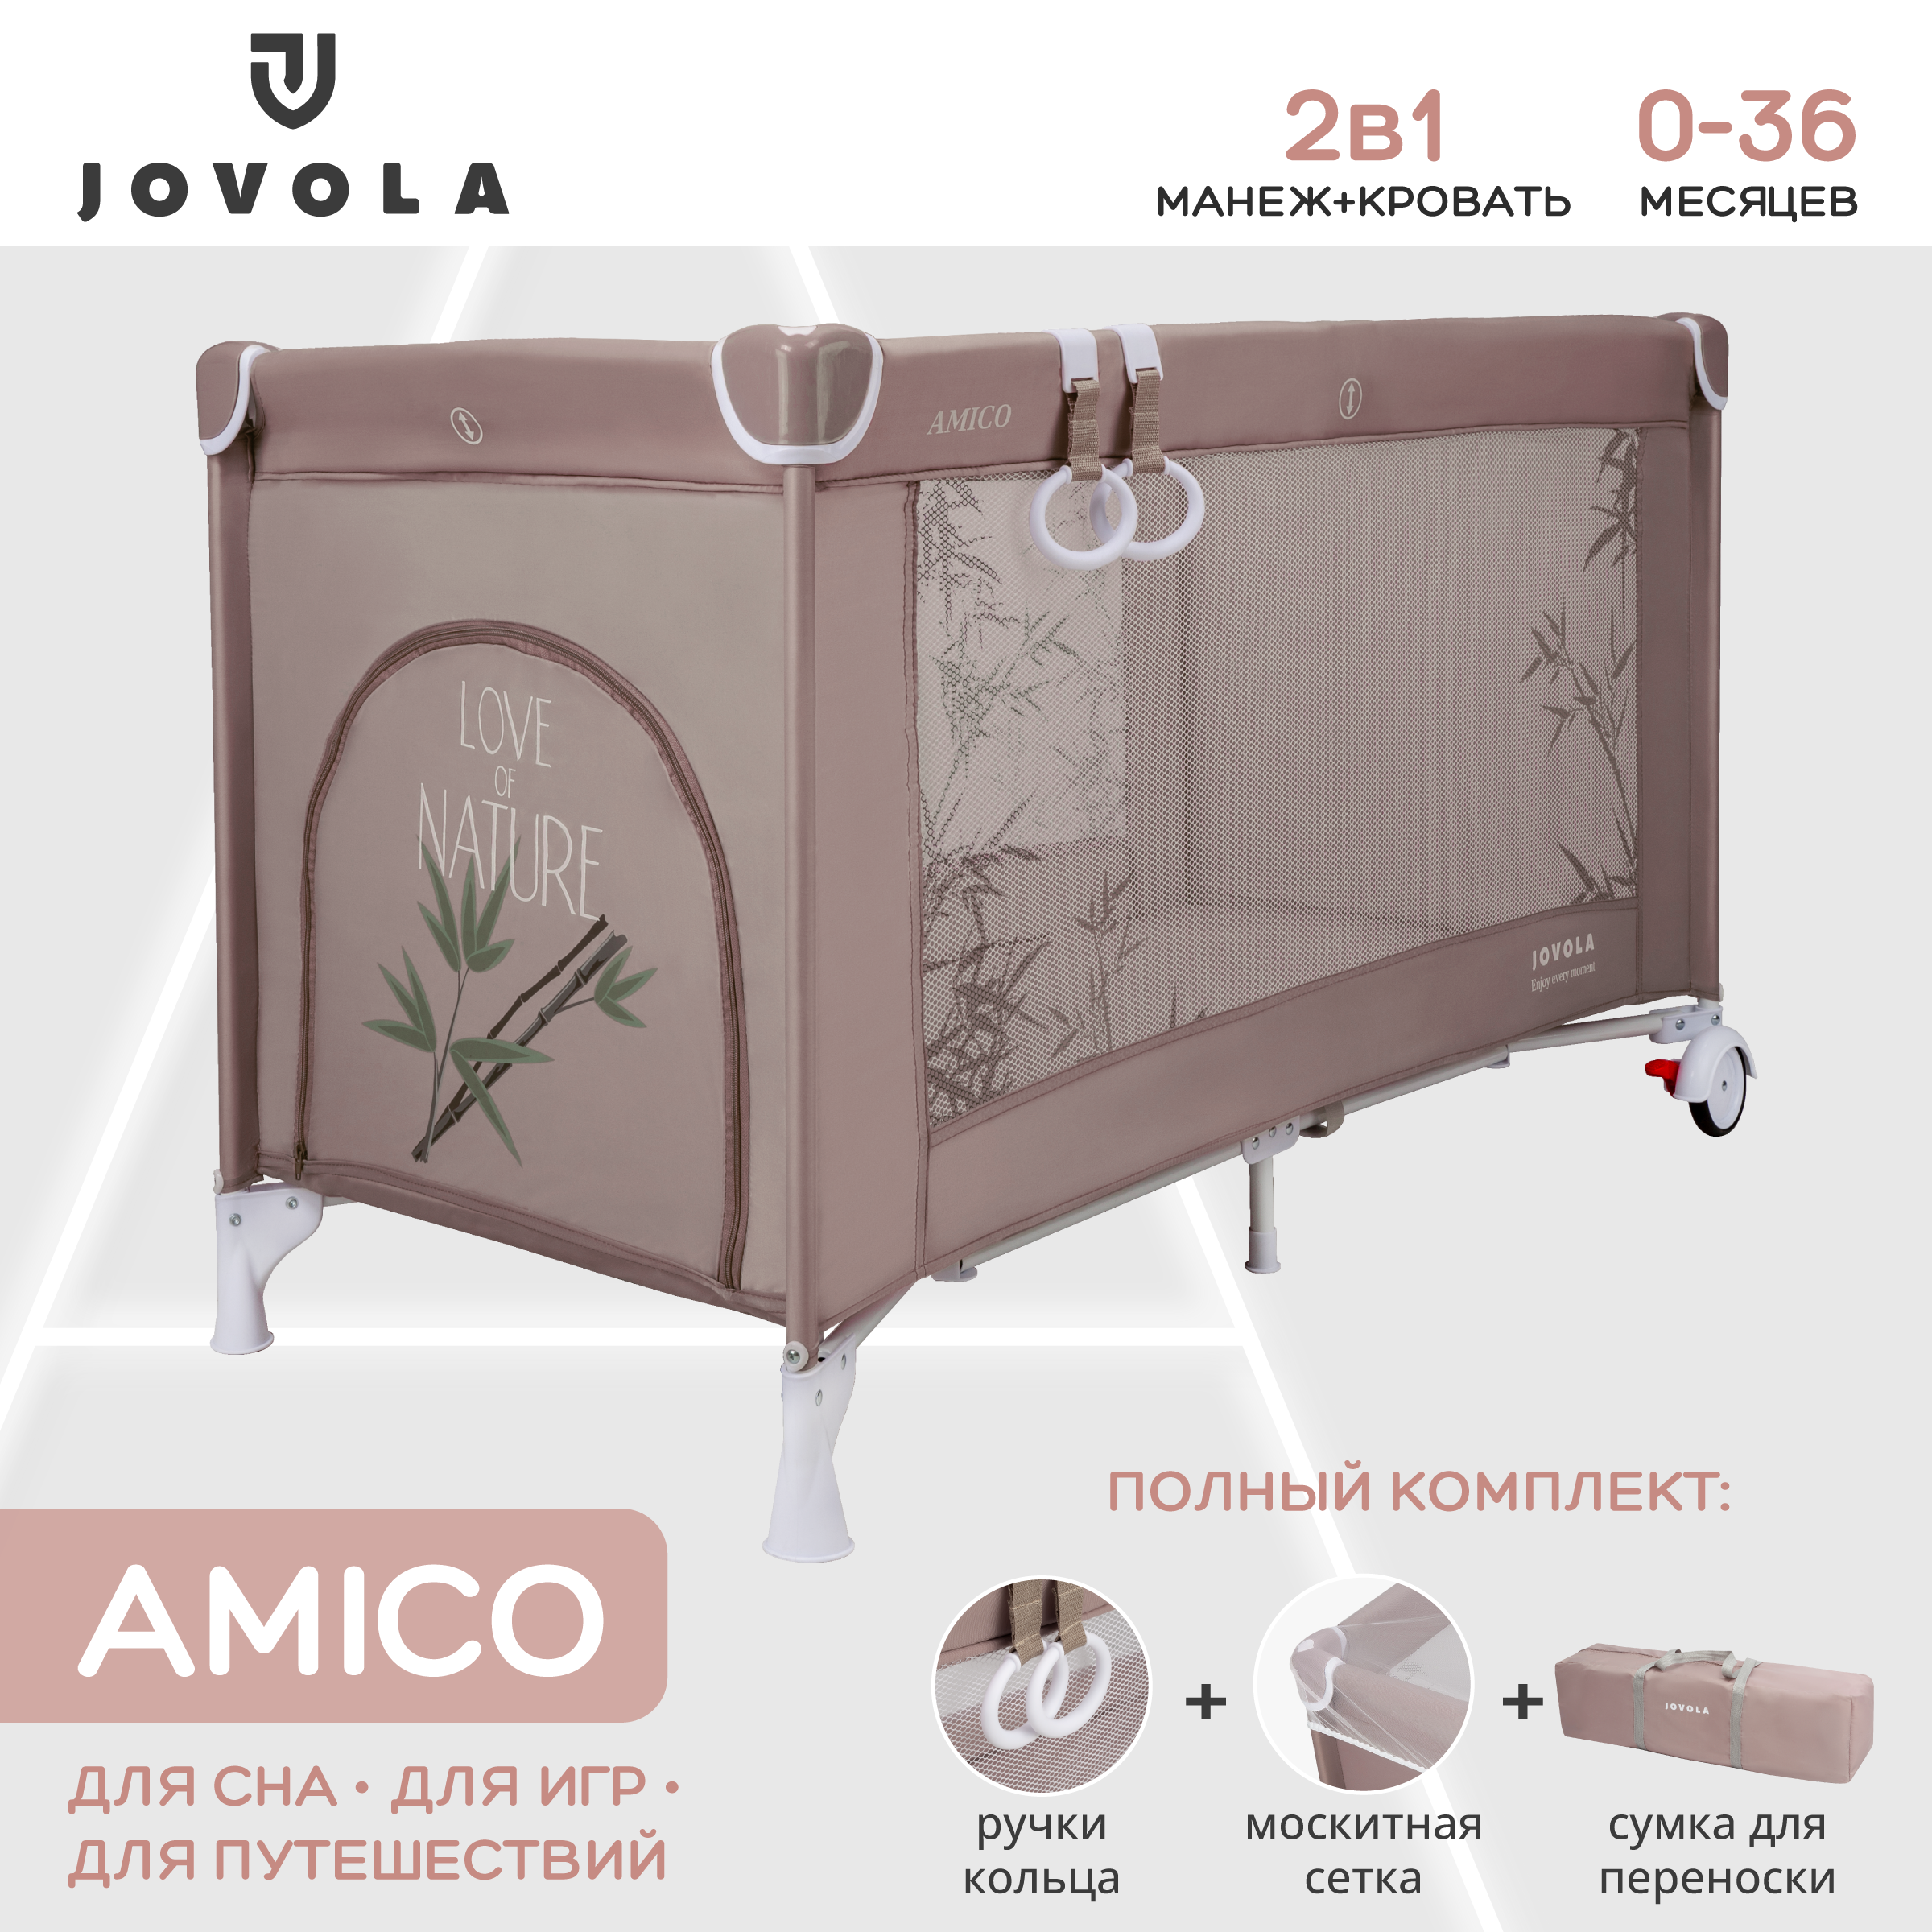 Манеж кровать детский Indigo JOVOLA AMICO складной 1 уровень мокко бамбук комплект изогнутых фиксированных обрезиненных штанг 5 шт от 10 до 20кг hasttings digger hd51g2b 10 2